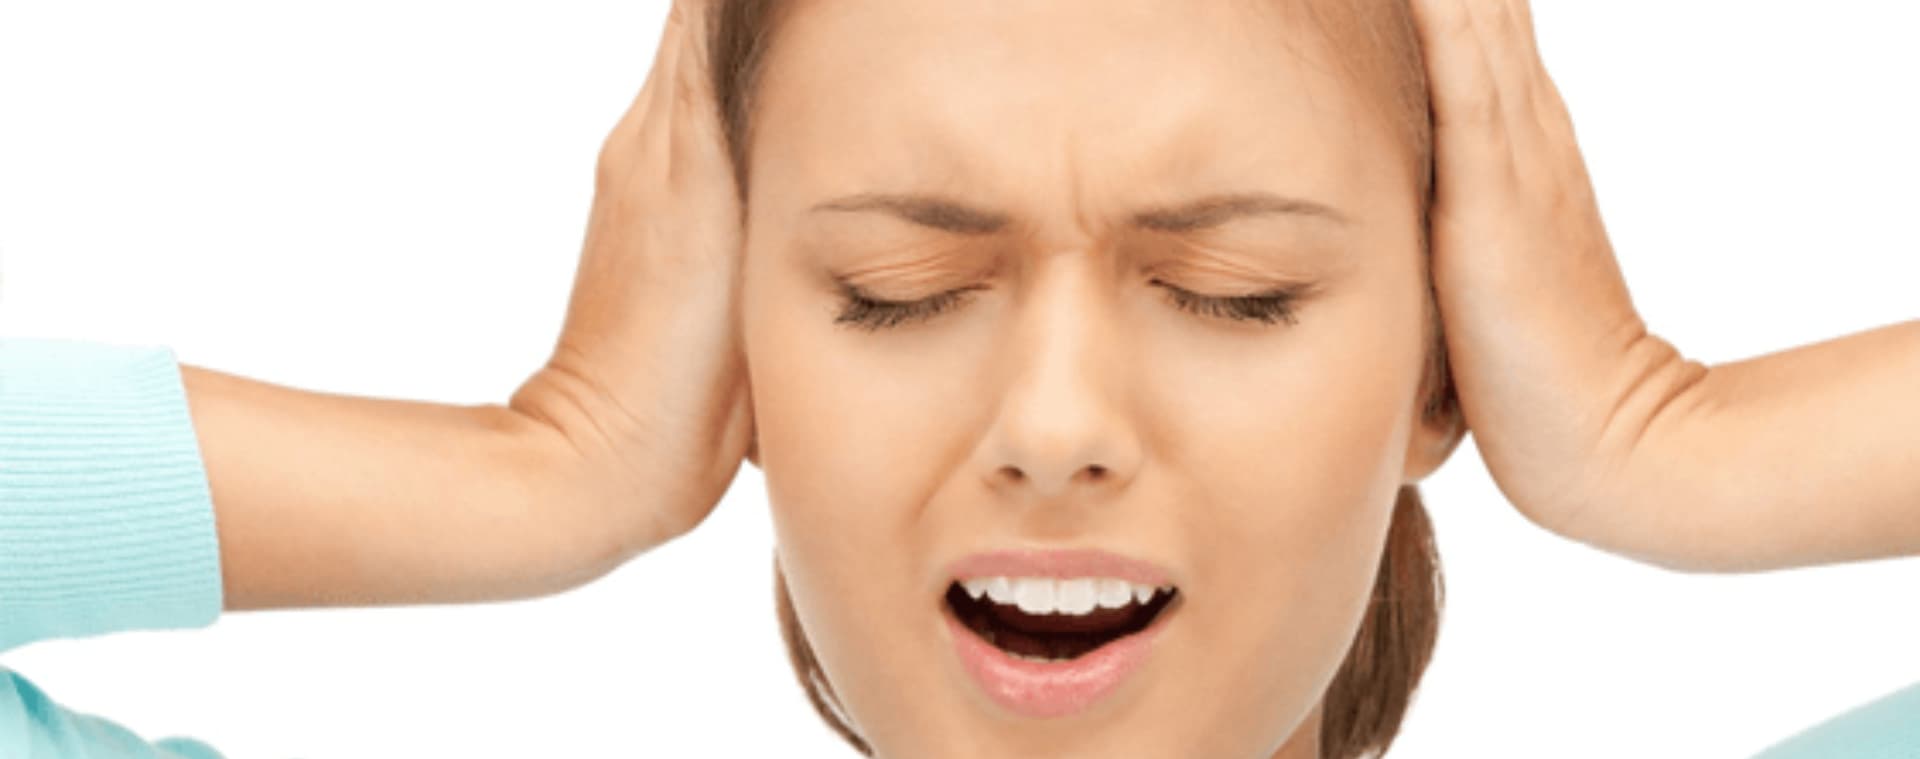 Sensation d'oreille bouchée : à quoi est-ce dû ? | Les Centres Masliah